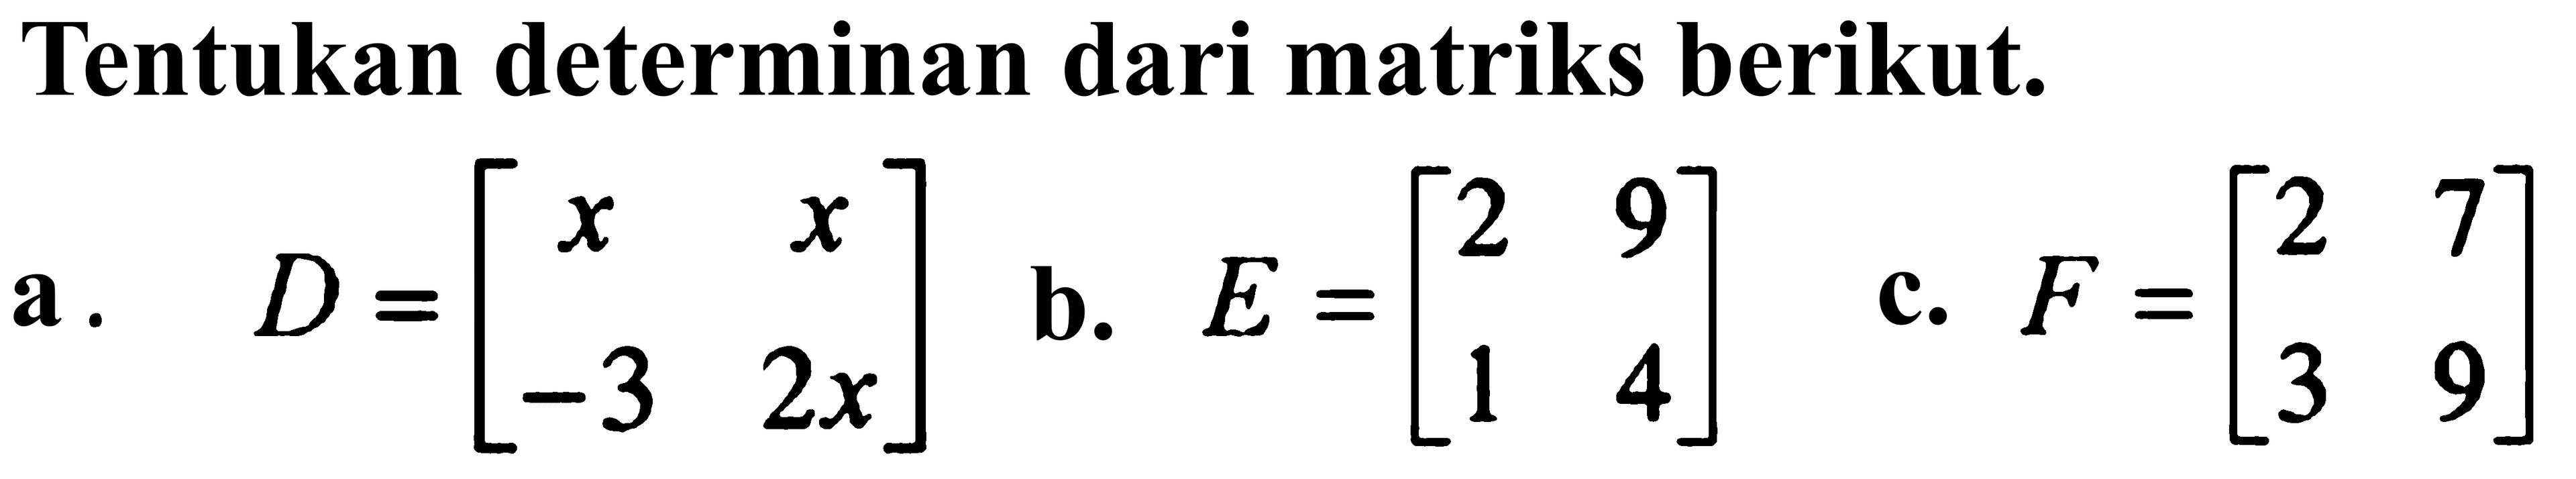 Tentukan determinan dari matriks berikut. a. D=[x x -3 2x] b. E=[2 9 1 4] c. F=[2 7 3 9]